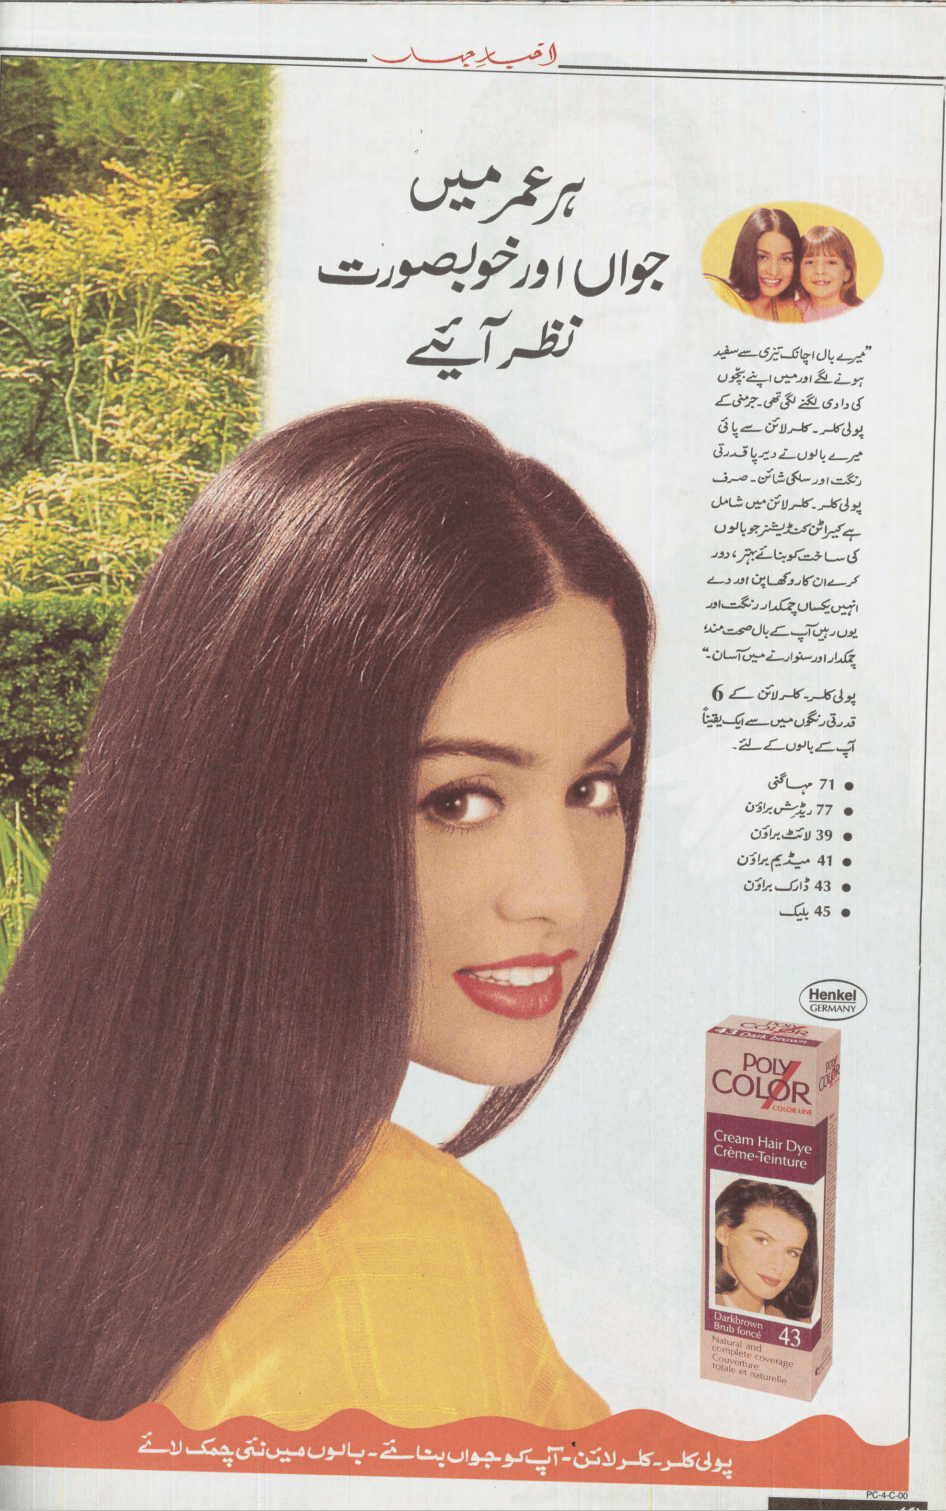 Akhbar-e-Jahan (Nov 4, 2001) - KHAJISTAN™